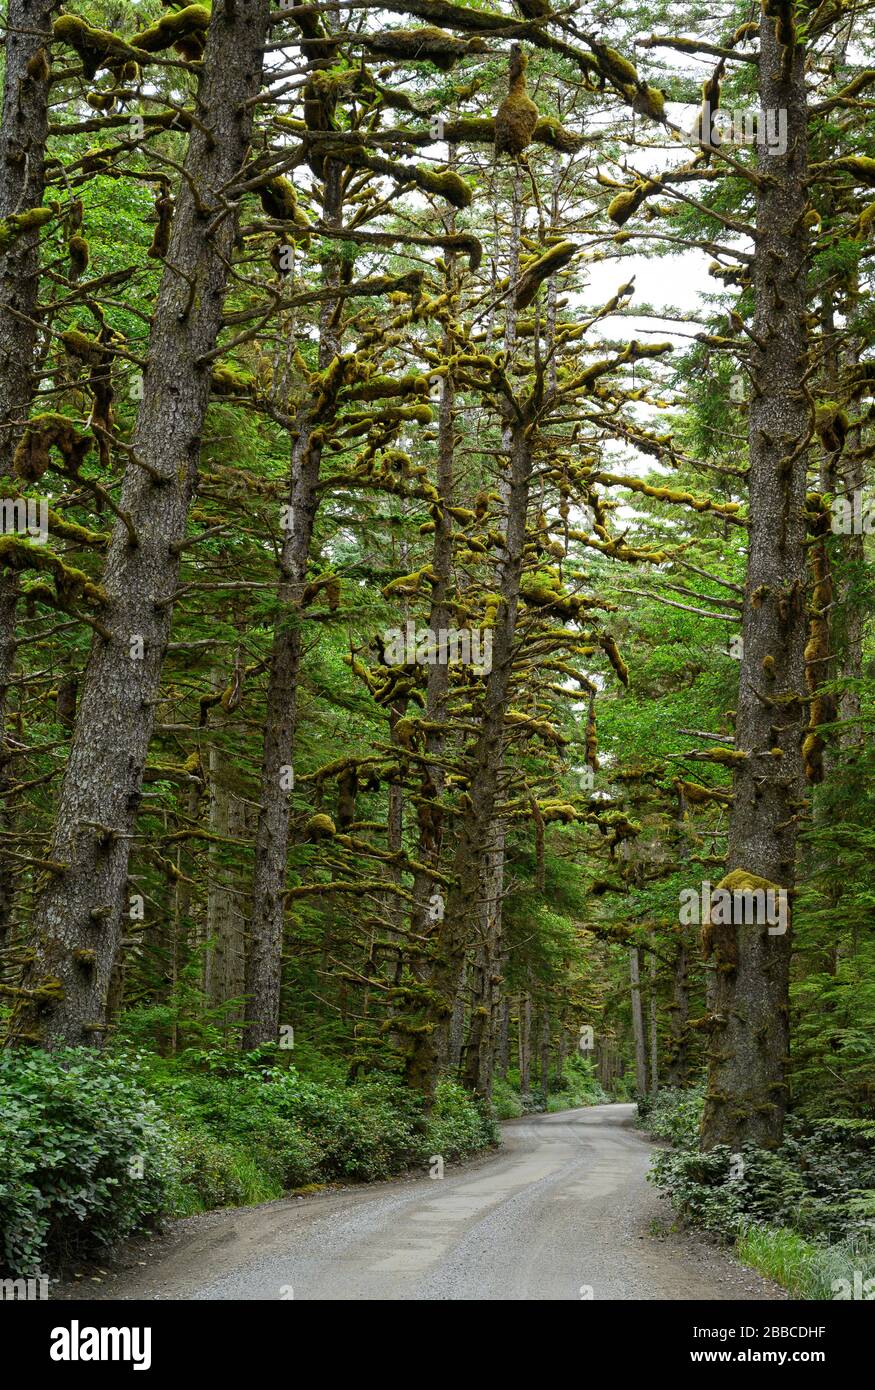 Route de la colline de remorquage, Haida Gwaii, anciennement connue sous le nom d’îles de la Reine-Charlotte, Colombie-Britannique, Canada Banque D'Images